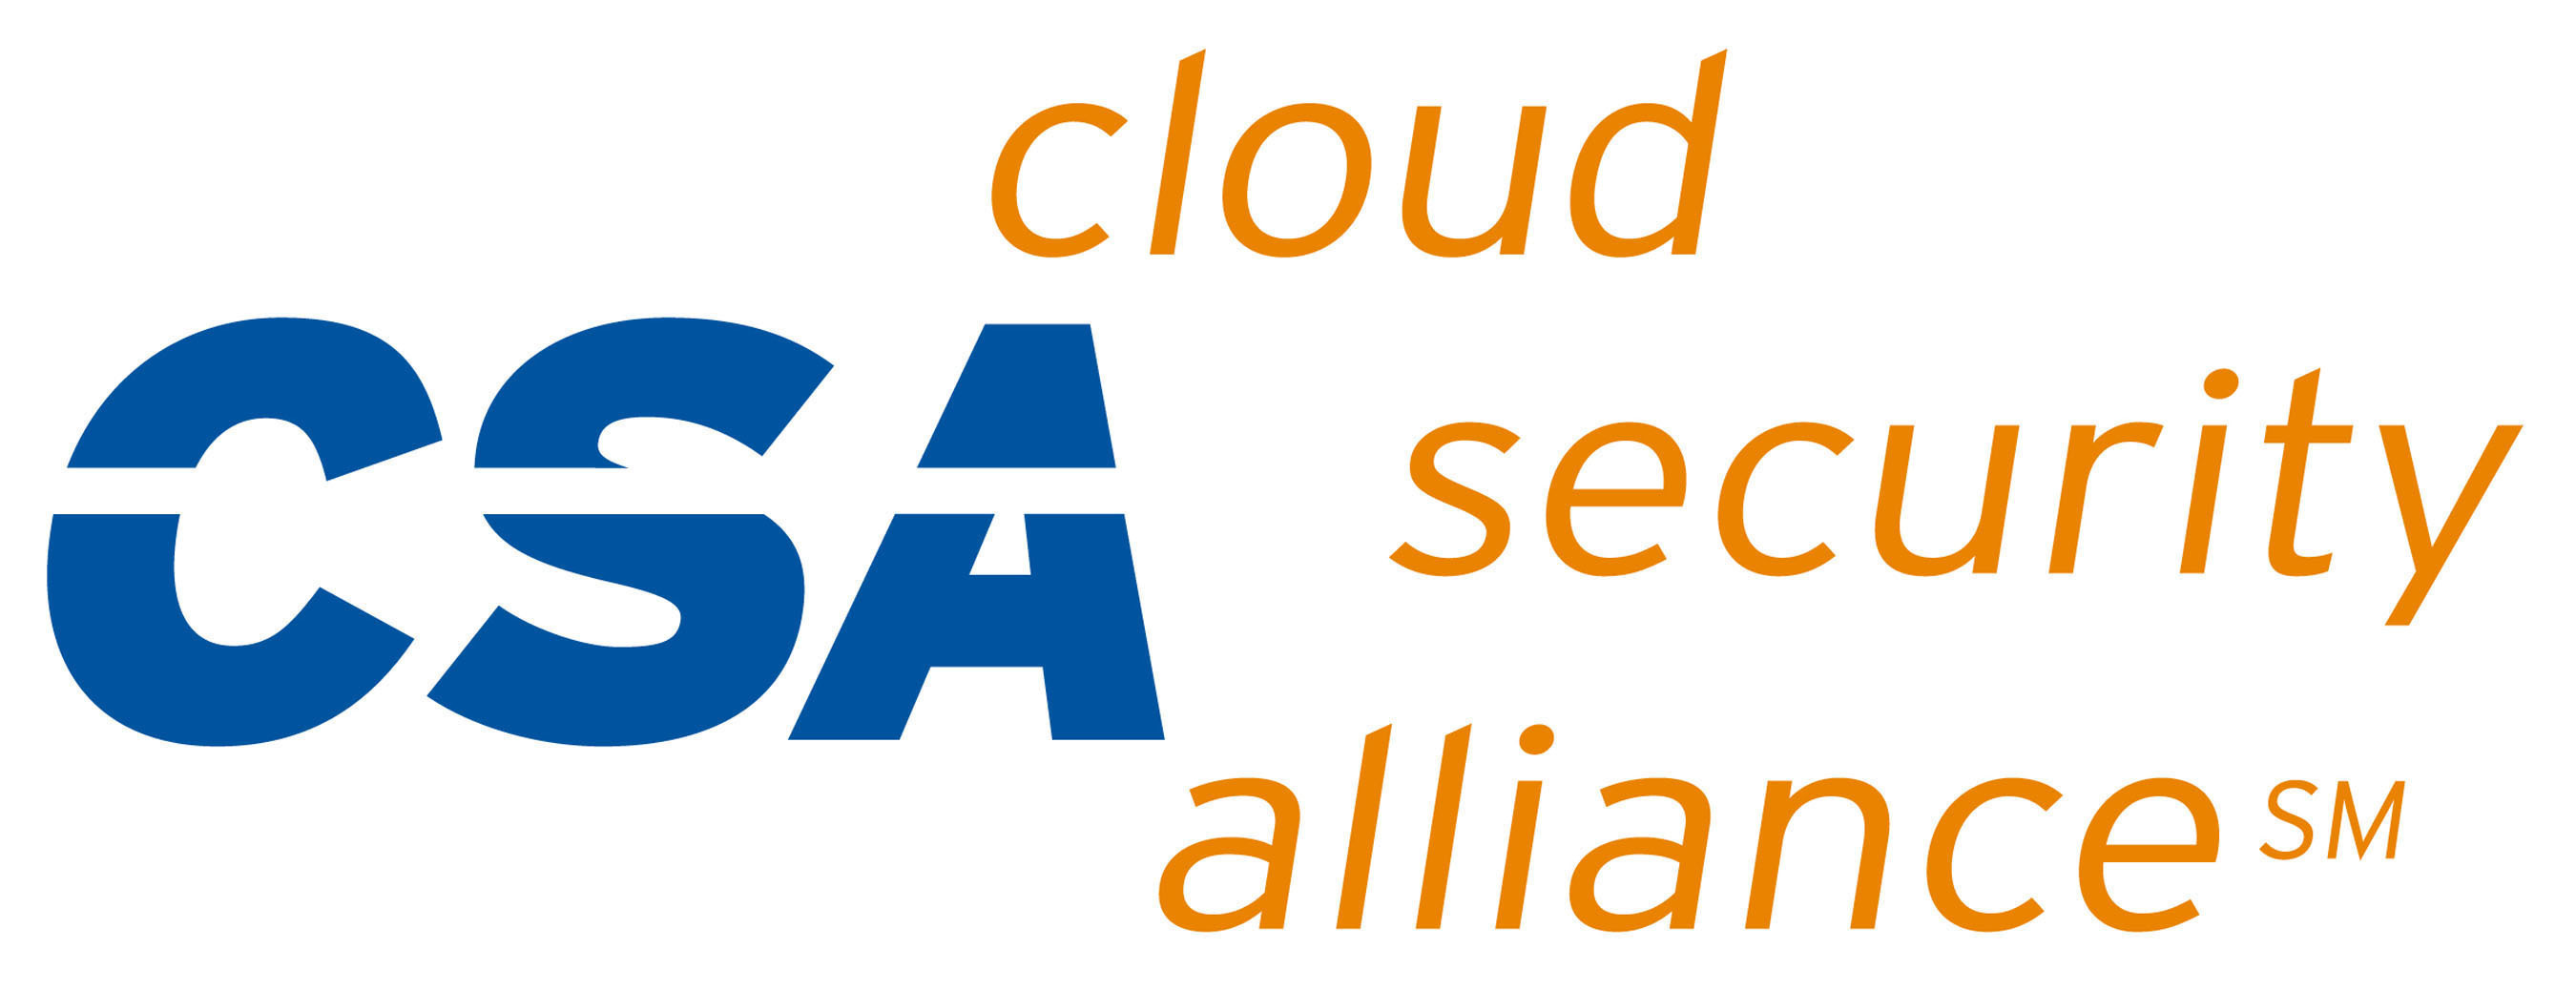 Cloud Security Alliance Logo.